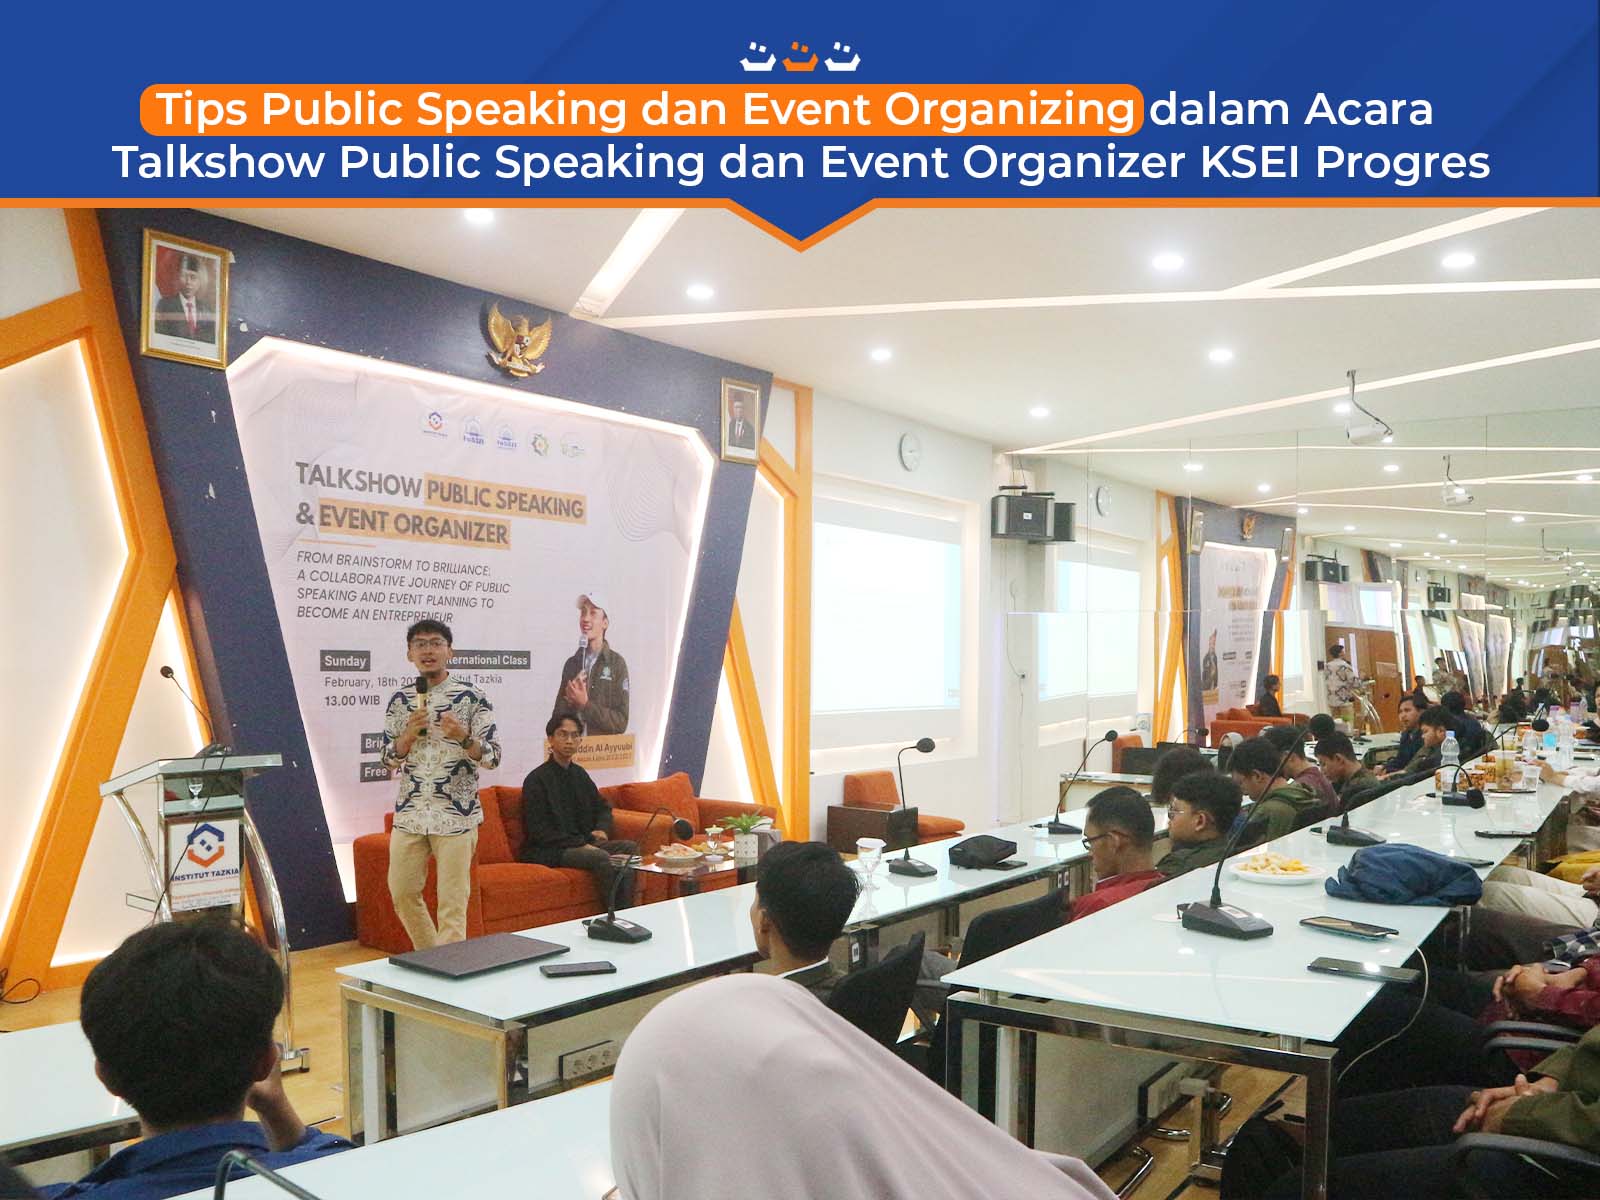 Tips Public Speaking dan Event Organizing dalam Acara Talkshow Public Speaking dan Event Organizer KSEI Progres